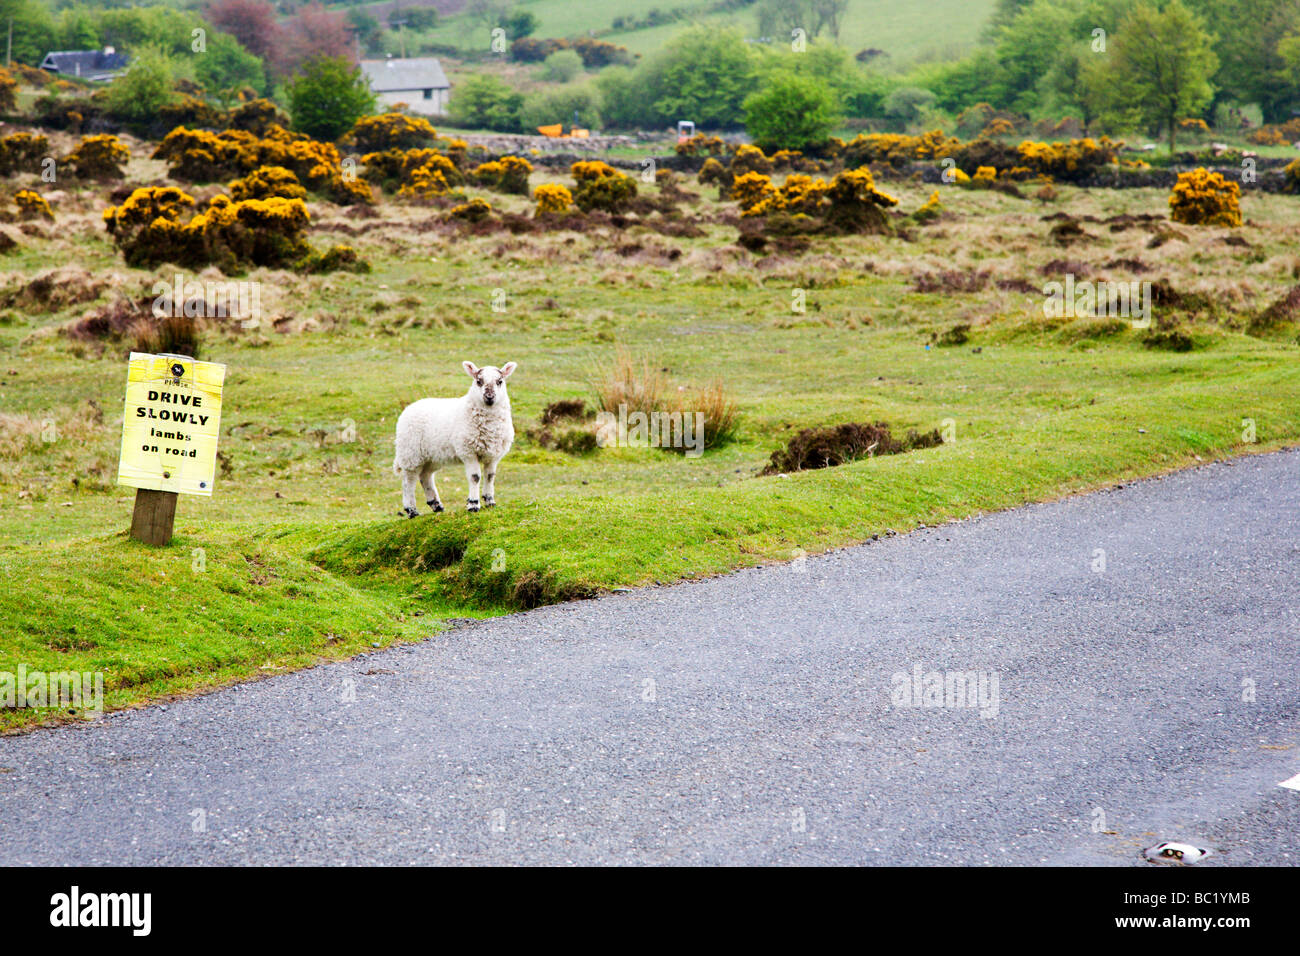 Lamb near drive slowly lambs on road sign Dartmoor England Stock Photo